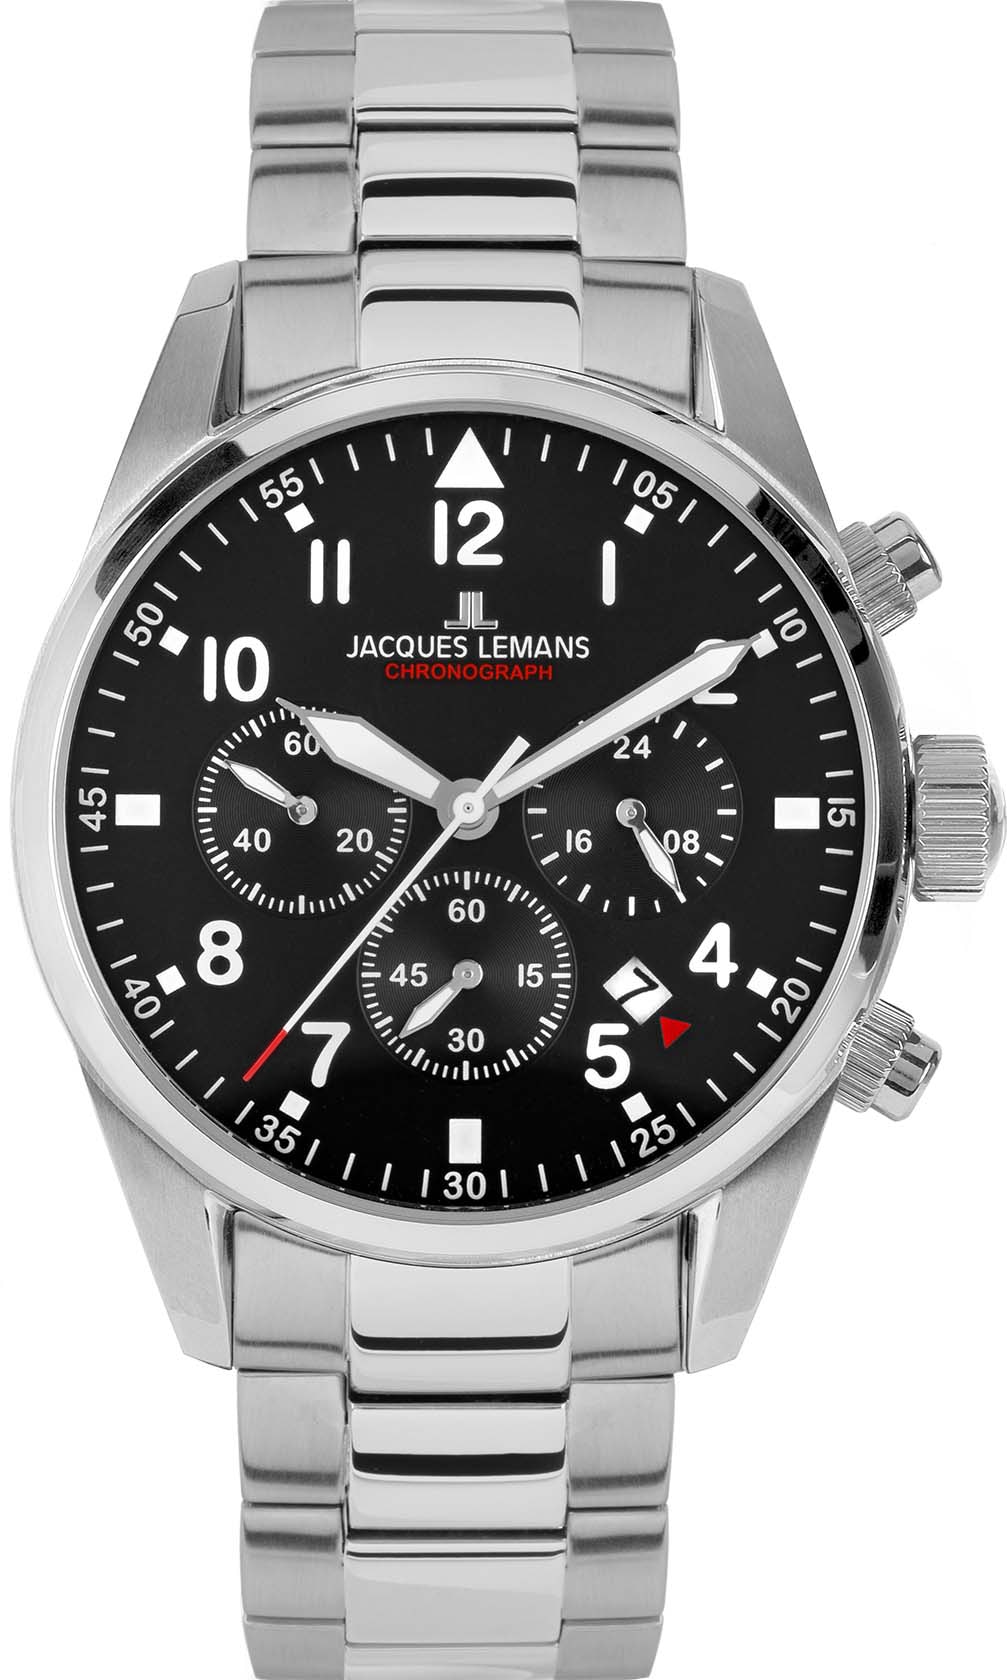 Jacques Lemans Uhren für Herren jetzt günstig bestellen ▻ | Quarzuhren